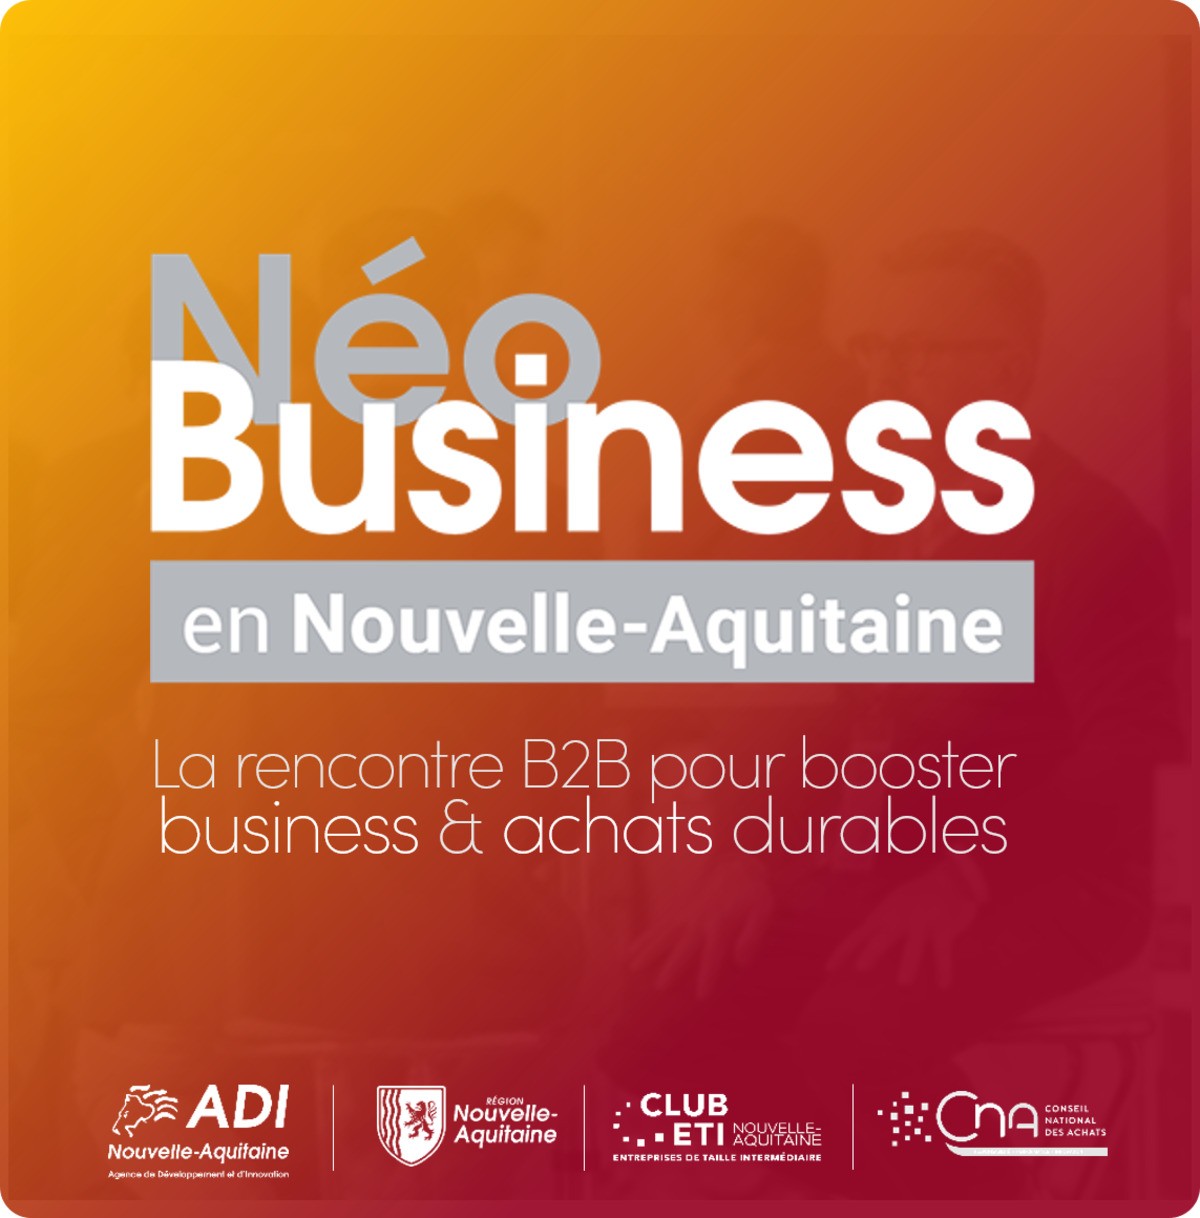 NéoBusiness en Nouvelle-Aquitaine - Du 8 au 10 novembre 2021